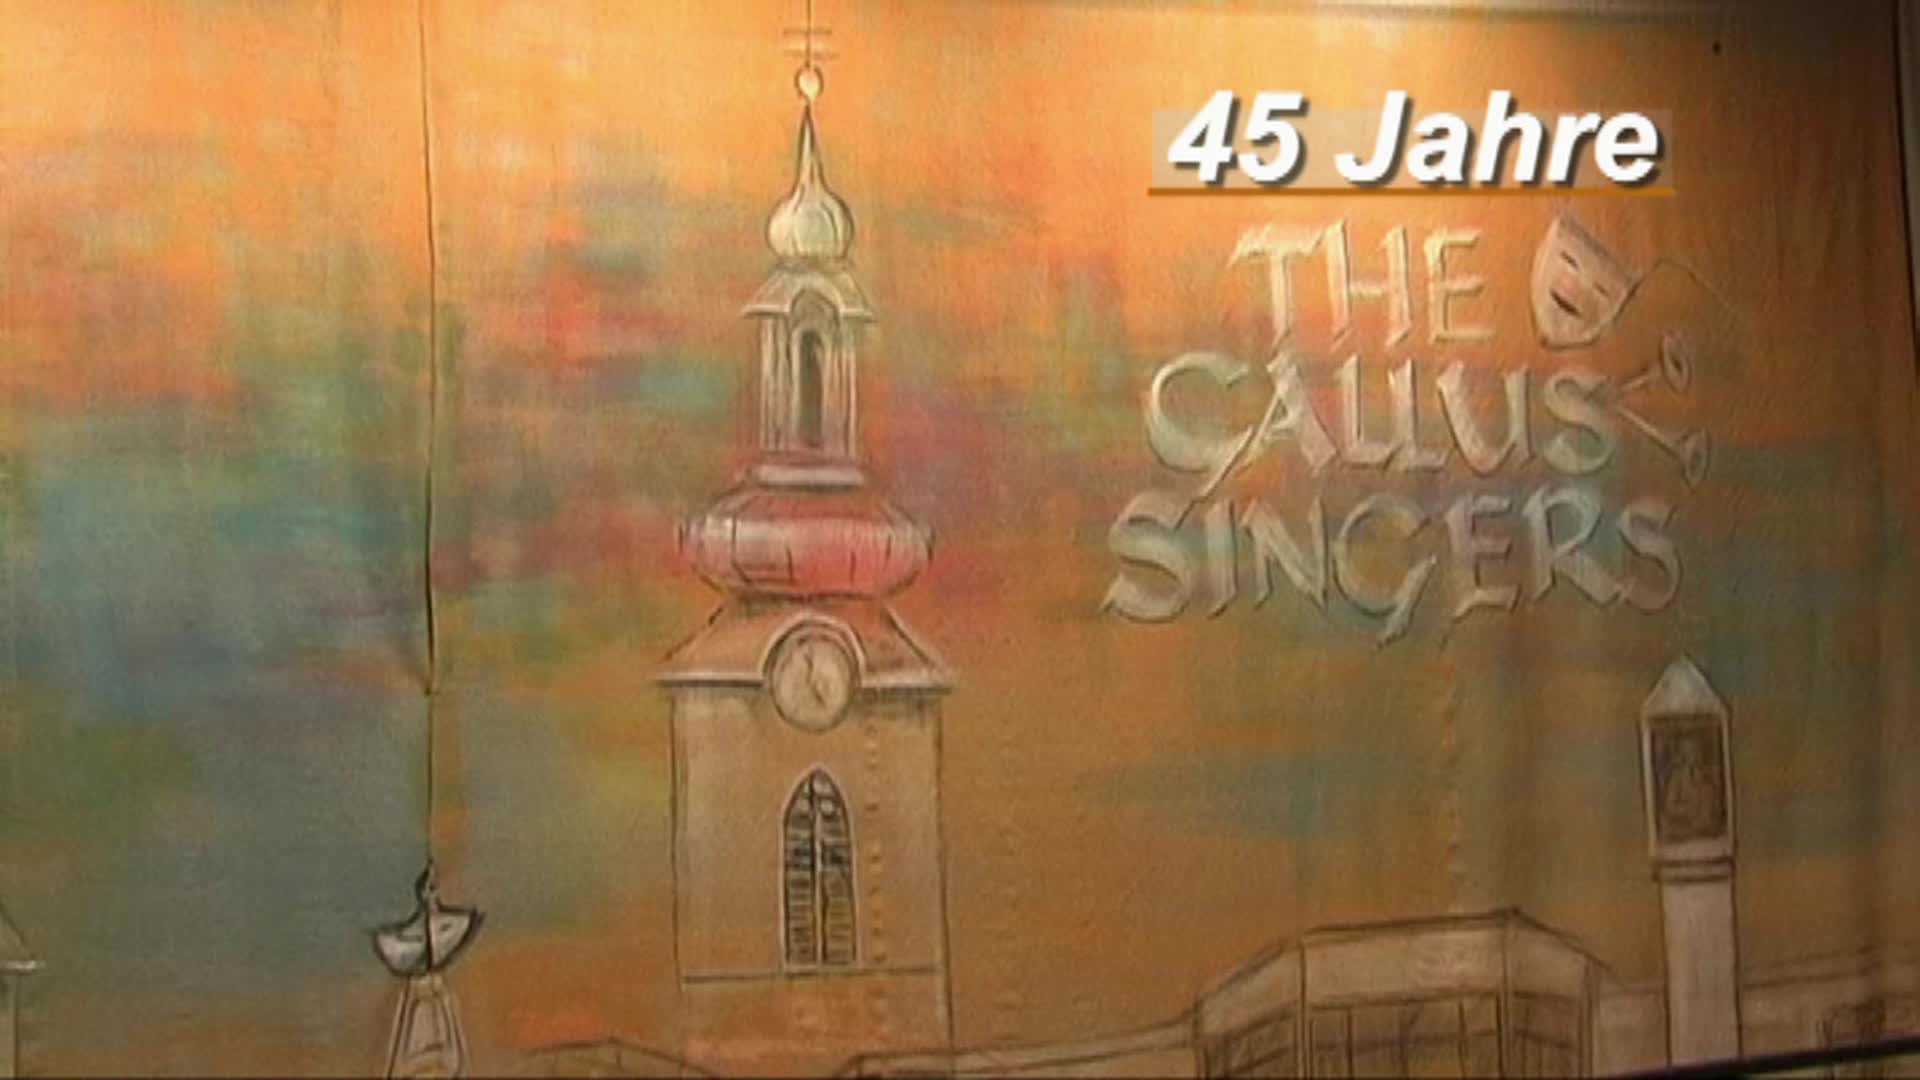 45 Jahre Gallus-Singers